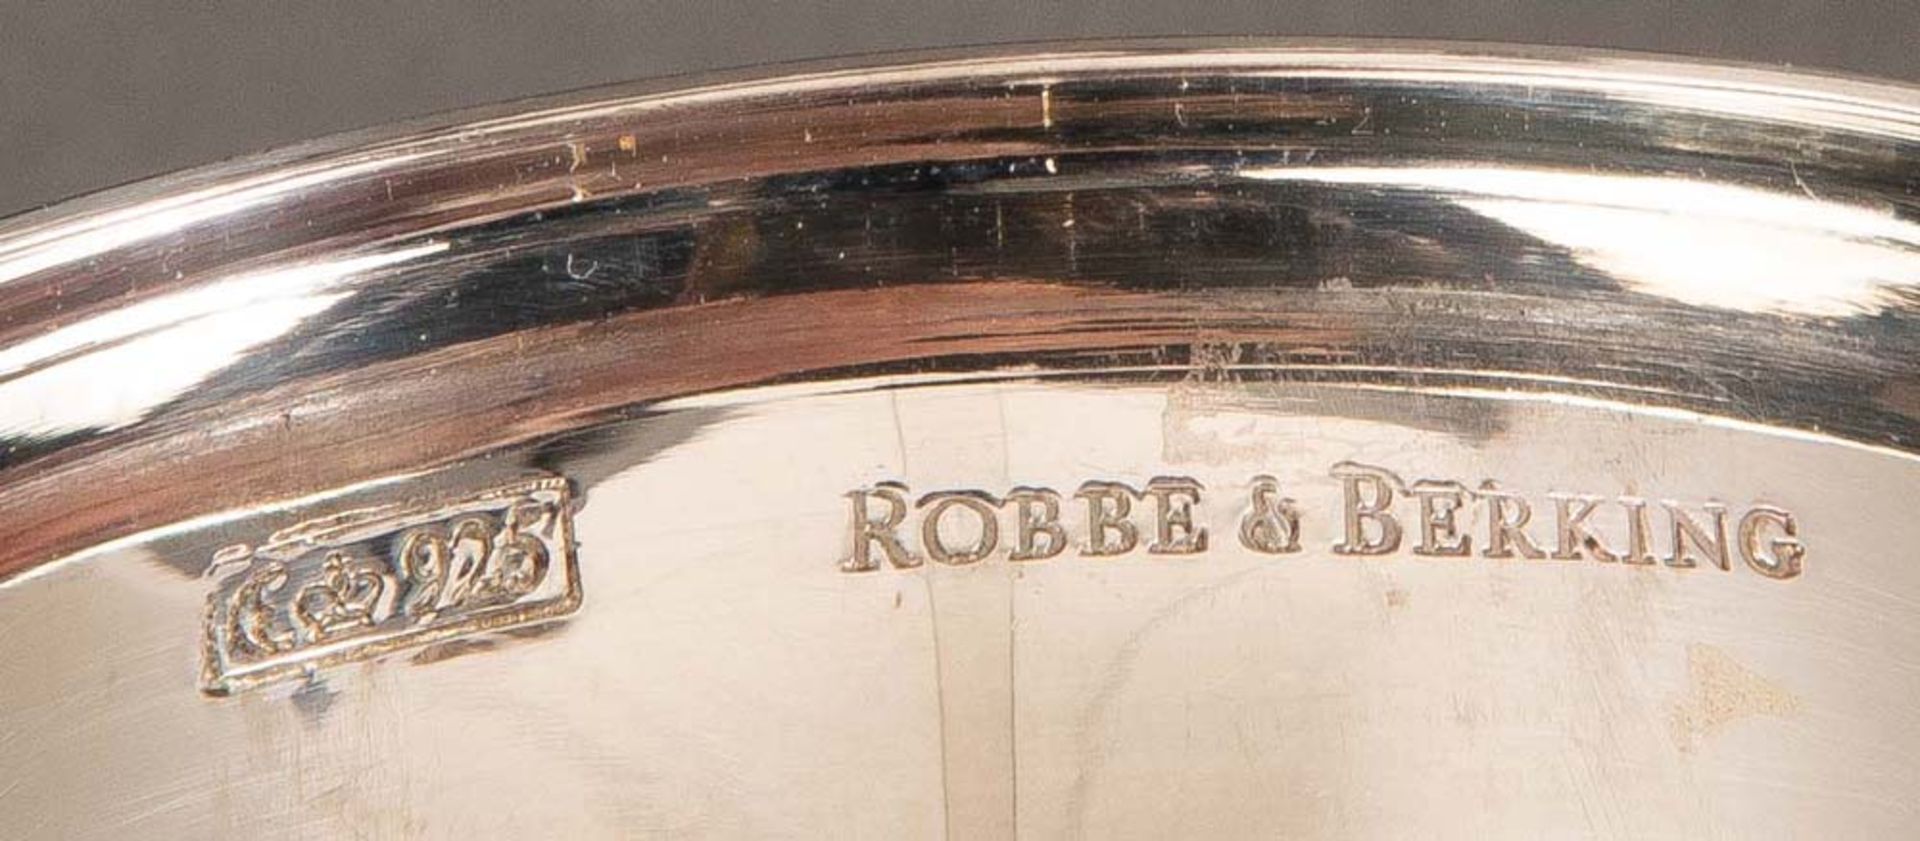 Gewürzbehälter. Robbe & Berking 20. Jh. 925er Sterlingsilber, ca. 343 g, im Holzgestell, H=6 cm, B= - Image 2 of 2